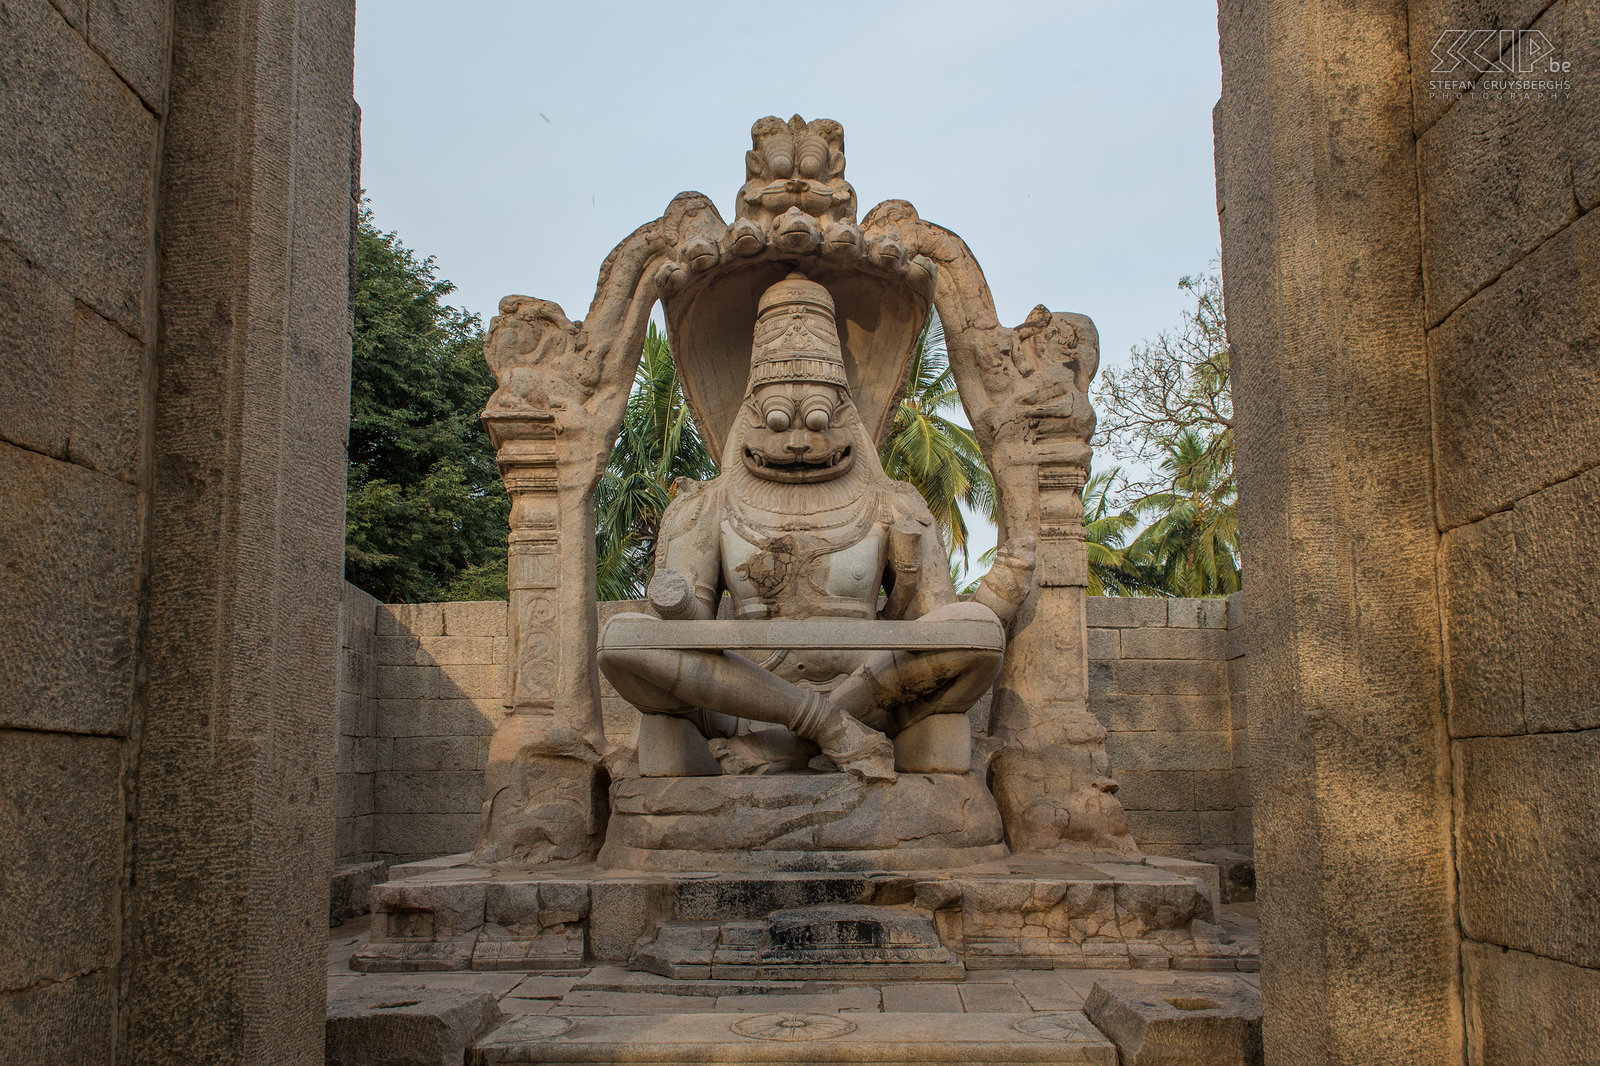 Hampi - Lakshmi Narasimha Het standbeeld van Lakshmi Narasimha is het grootste monolitisch standbeeld in Hampi. Narasimha zit op een gigantische zevenkoppige slang genaamd Sesha. Stefan Cruysberghs